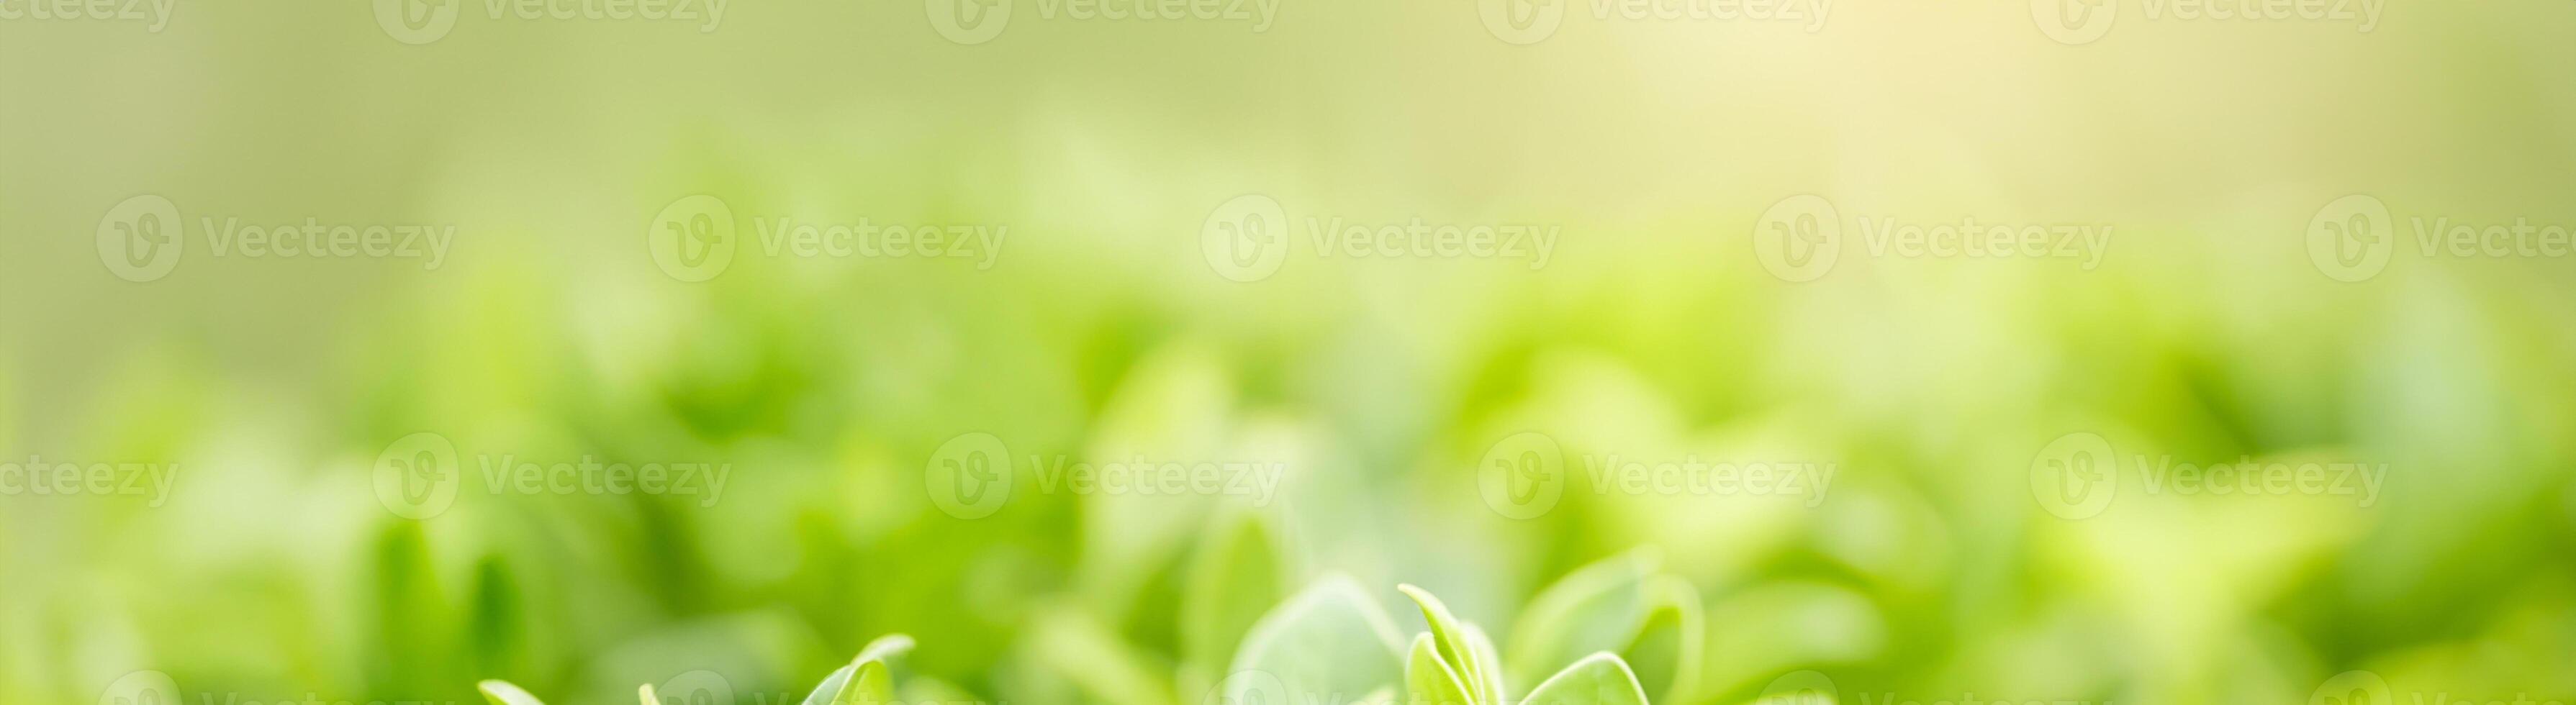 lussureggiante eleganza, vicino su di vivace verde foglie, illuminata dal sole sfocato verdura sfondo con bokeh, ideale per ecologia copertina pagina concetto con ampio copia spazio foto